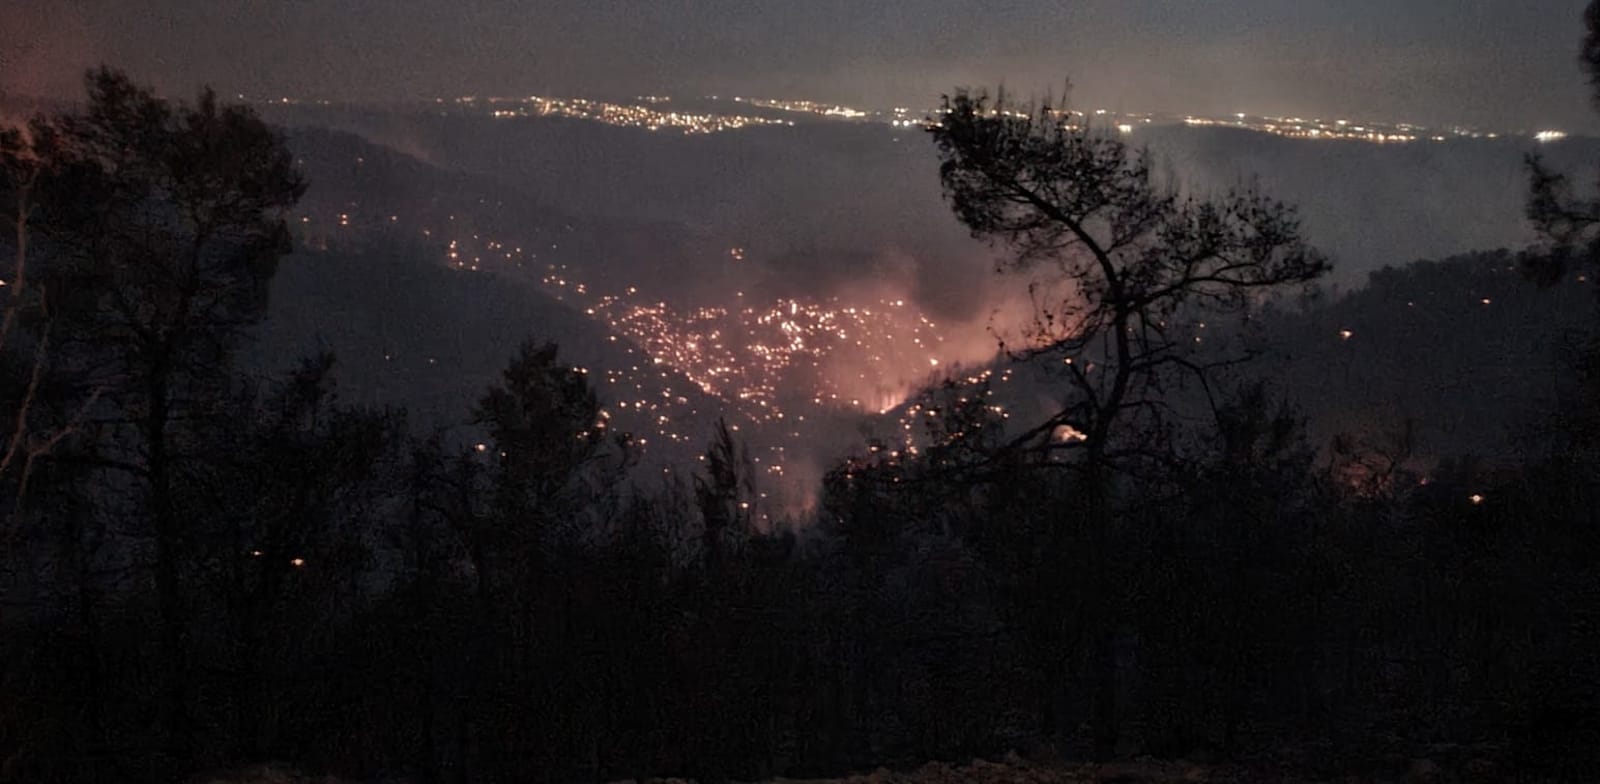 מוקדי השריפה בנחל צובה בין הר טייסים להר איתן / צילום: רועי שטראוס, רשות הטבע והגנים